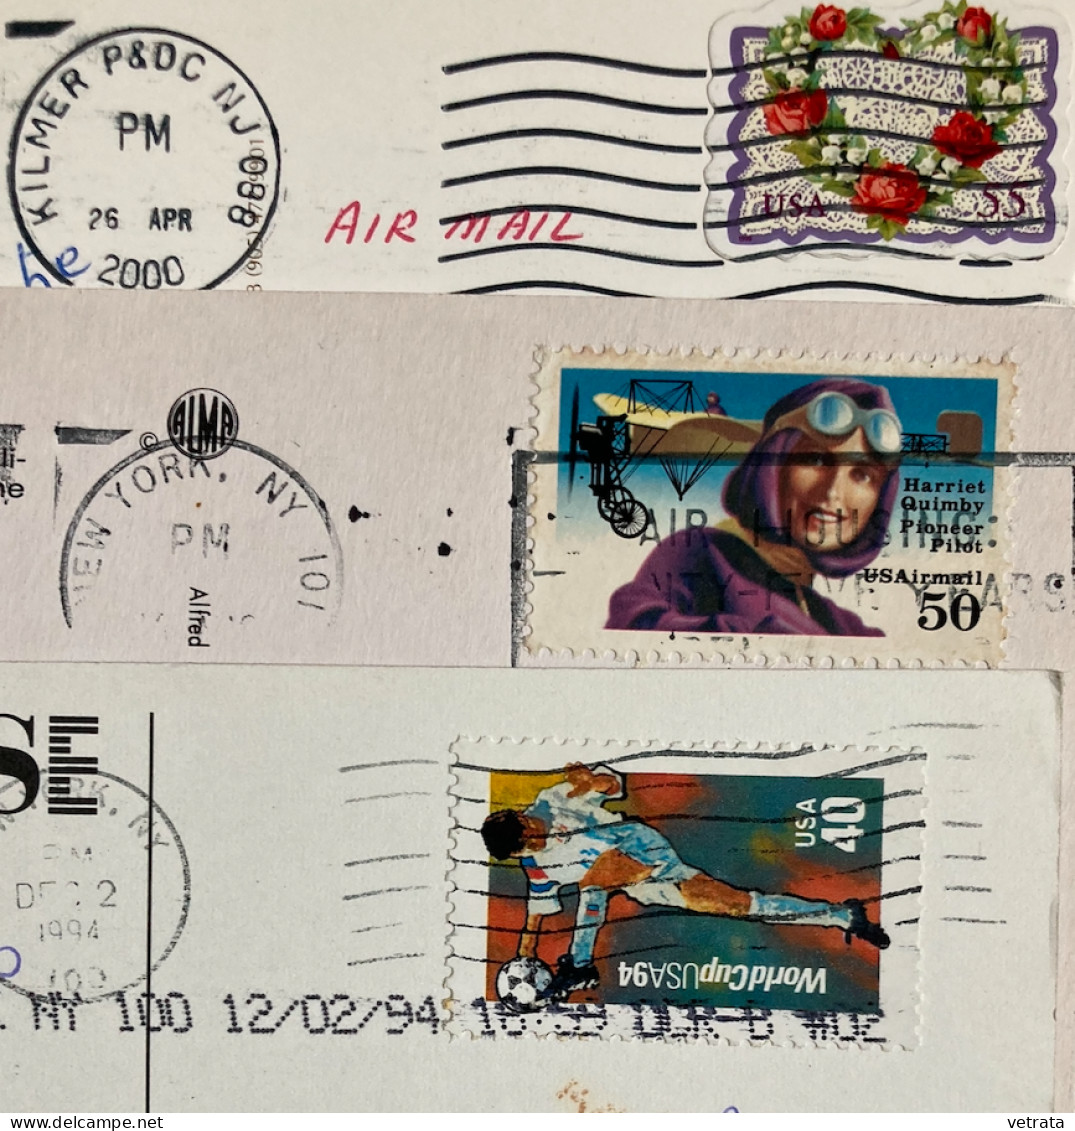 NEW YORK : 1 Revue (Autrement N°39/1982-300 pages) / 3 Cartes postales Affranchies, avec correspondance  1907/08/22 & 7